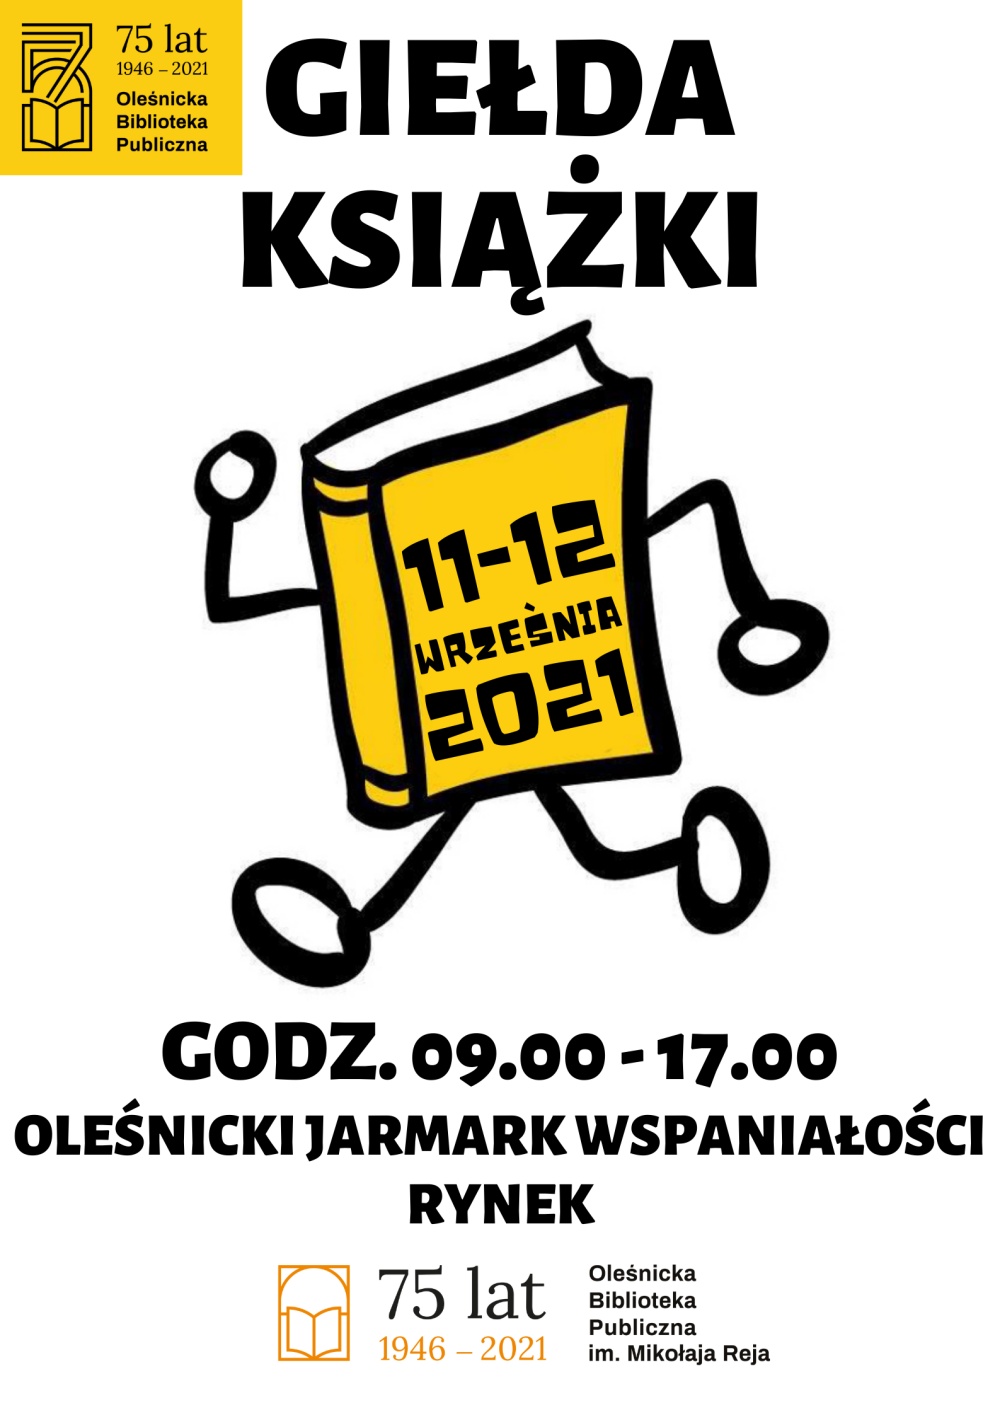 Plakat promujący Giełdę Książki 11 i 12 września 2021 roku